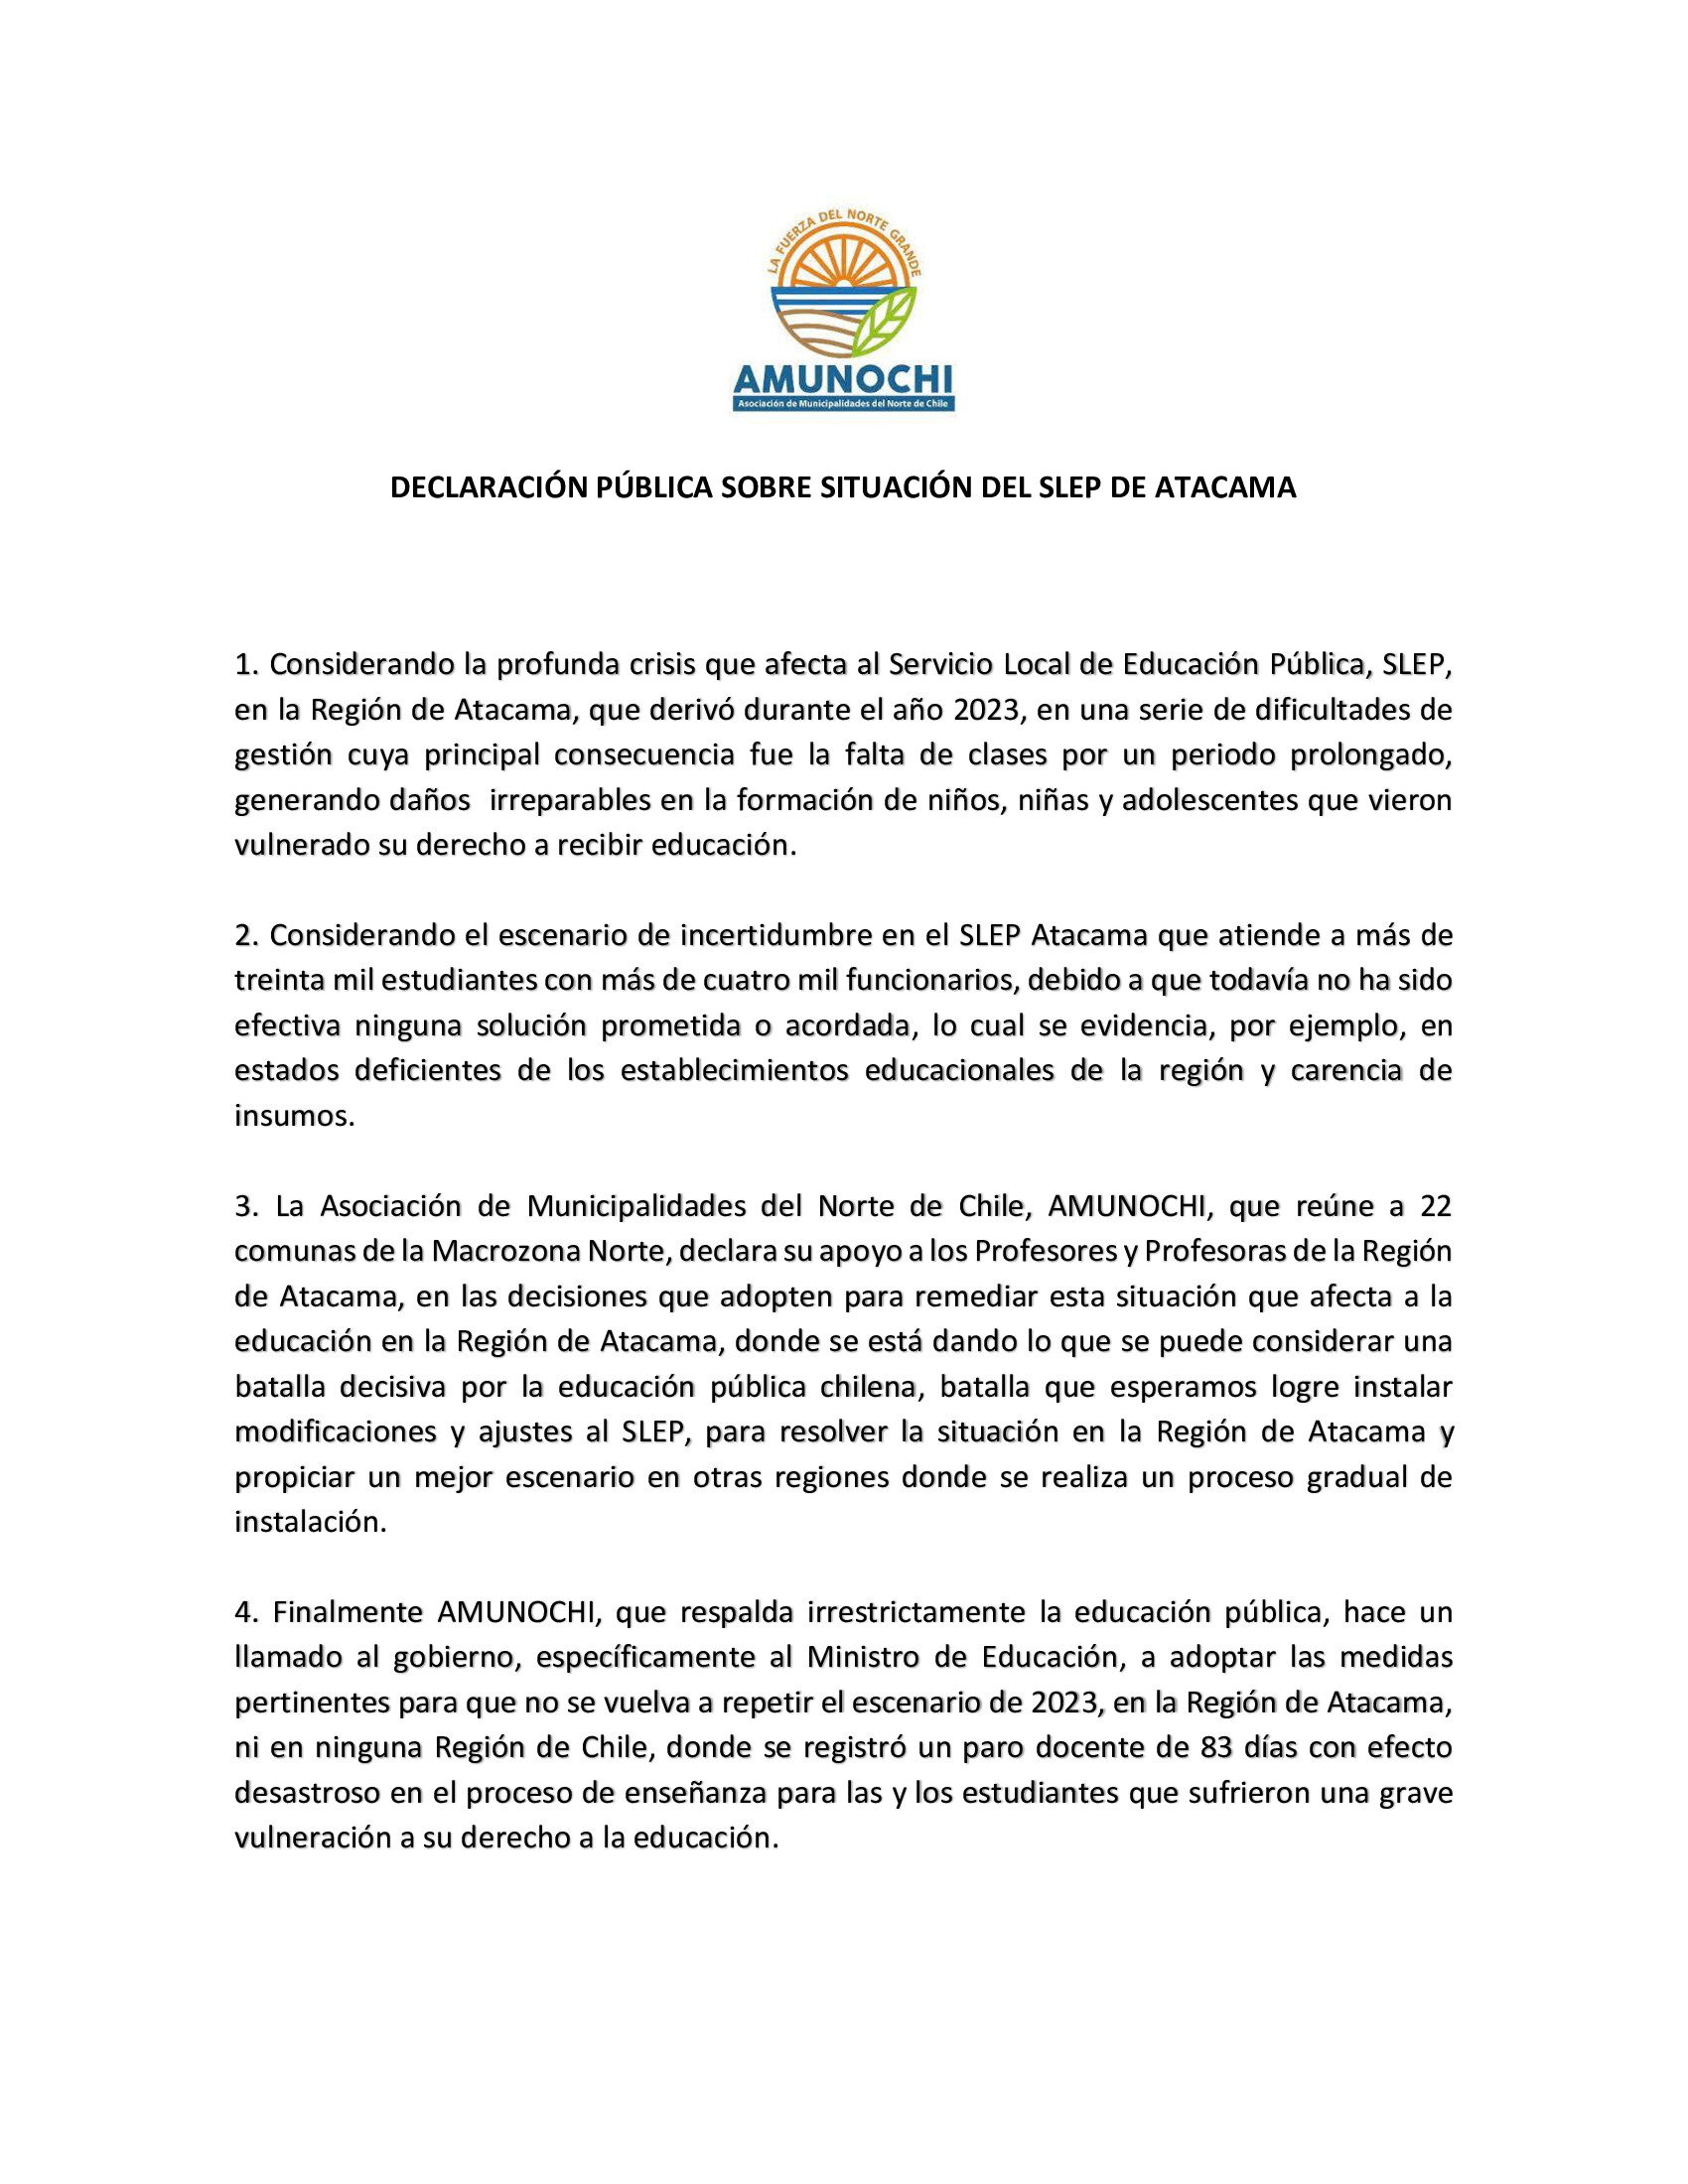 Declaración Pública de AMUNOCHI sobre situación del SLEP Atacama